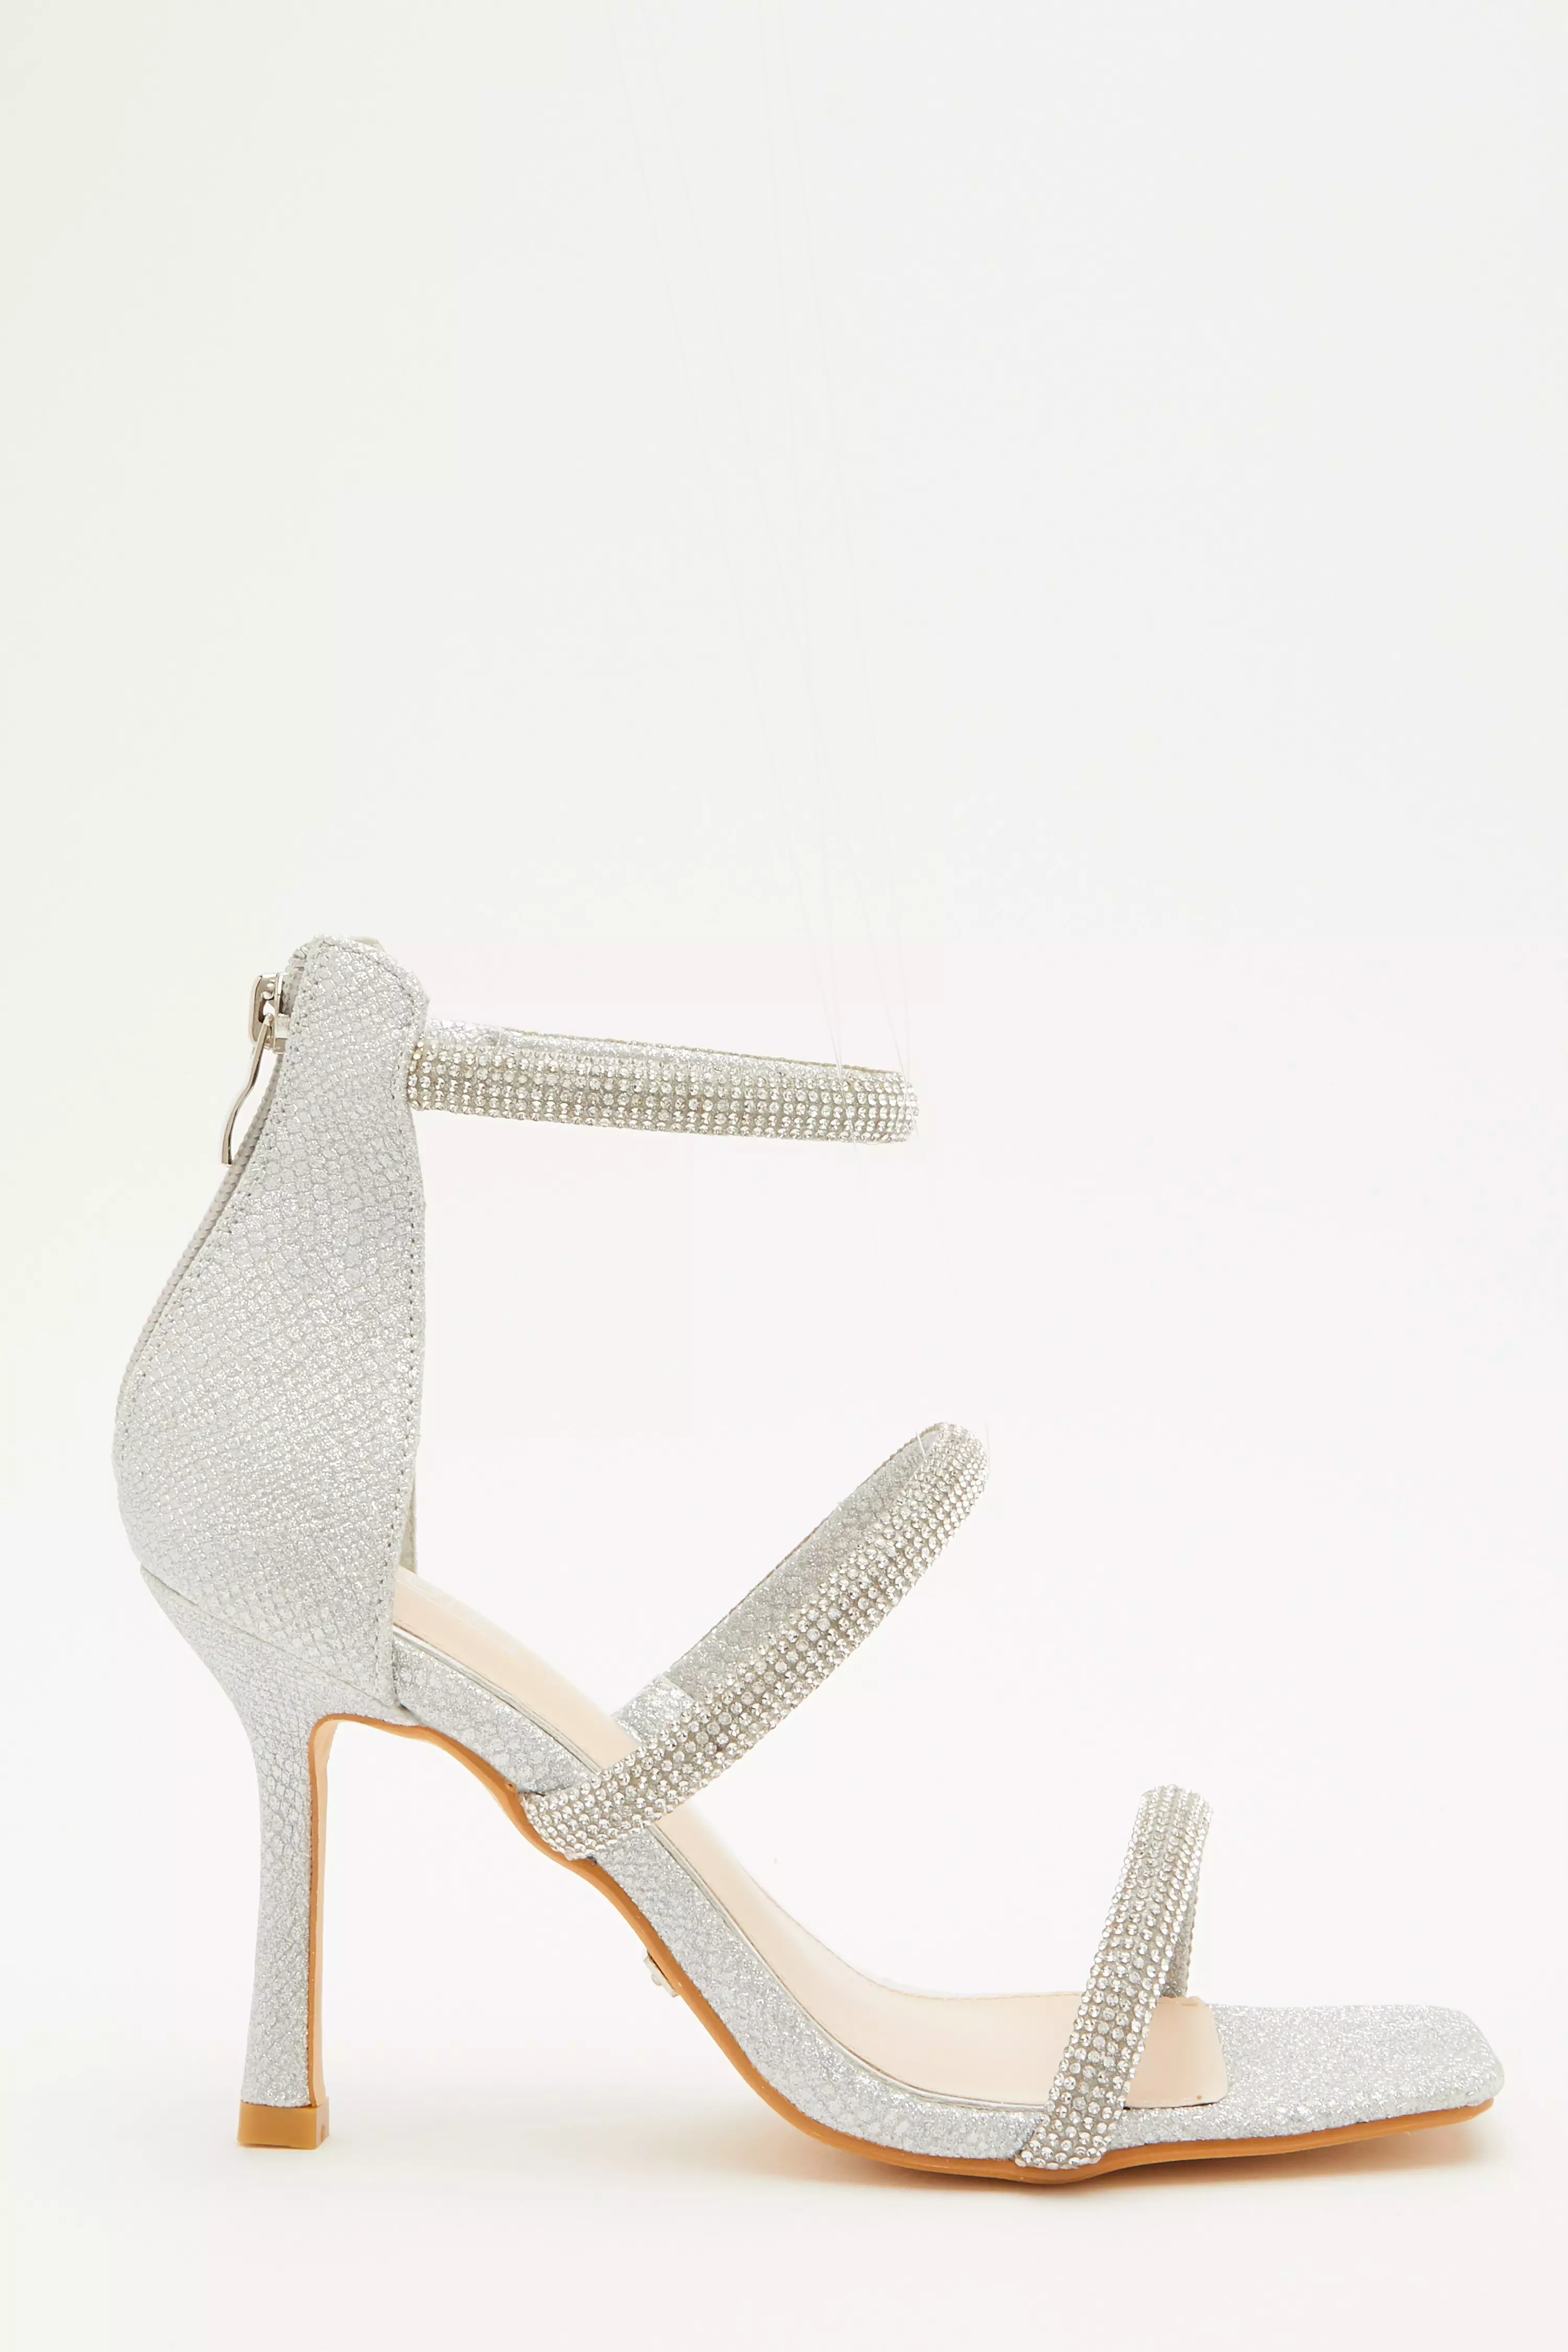 Silver Shimmer Embellished Heeled Sandals - QUIZ Clothing